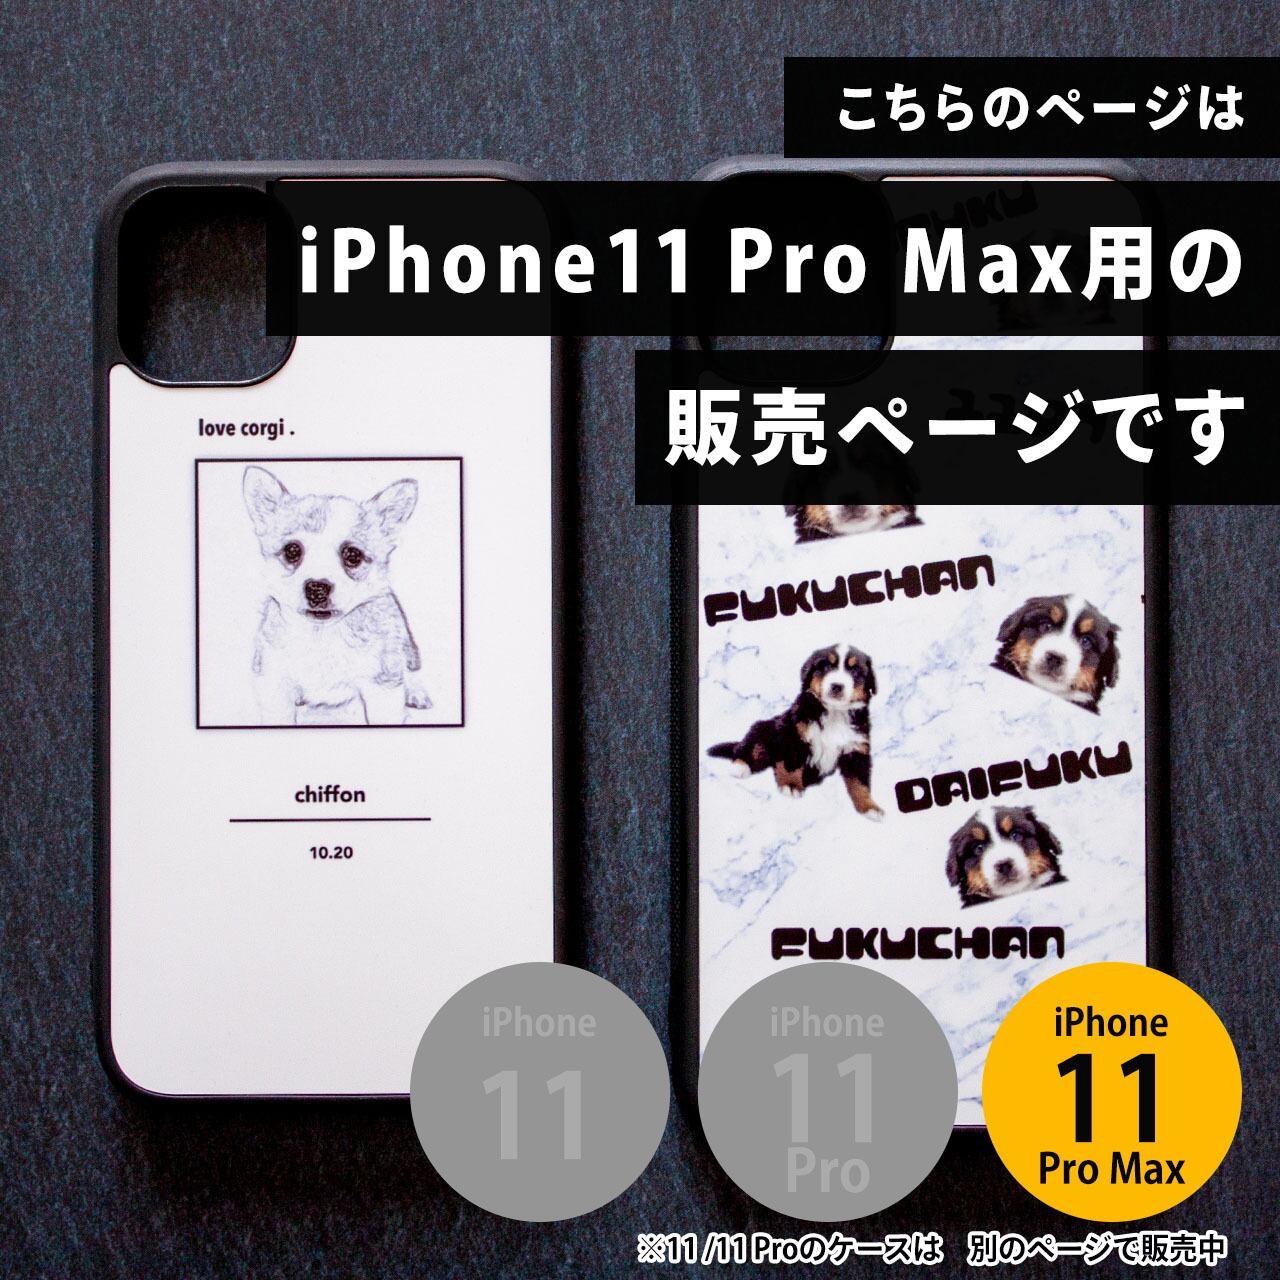 写真でオーダーメイド・オリジナルiPhone 11 Pro  Maxケース(カバー)/カスタムオーダー/ハイブリッドiPhoneケース/写真プリント/指紋防止 |  すまでこオンラインショップースマホの写真でオリジナルアイテム作成 powered by BASE